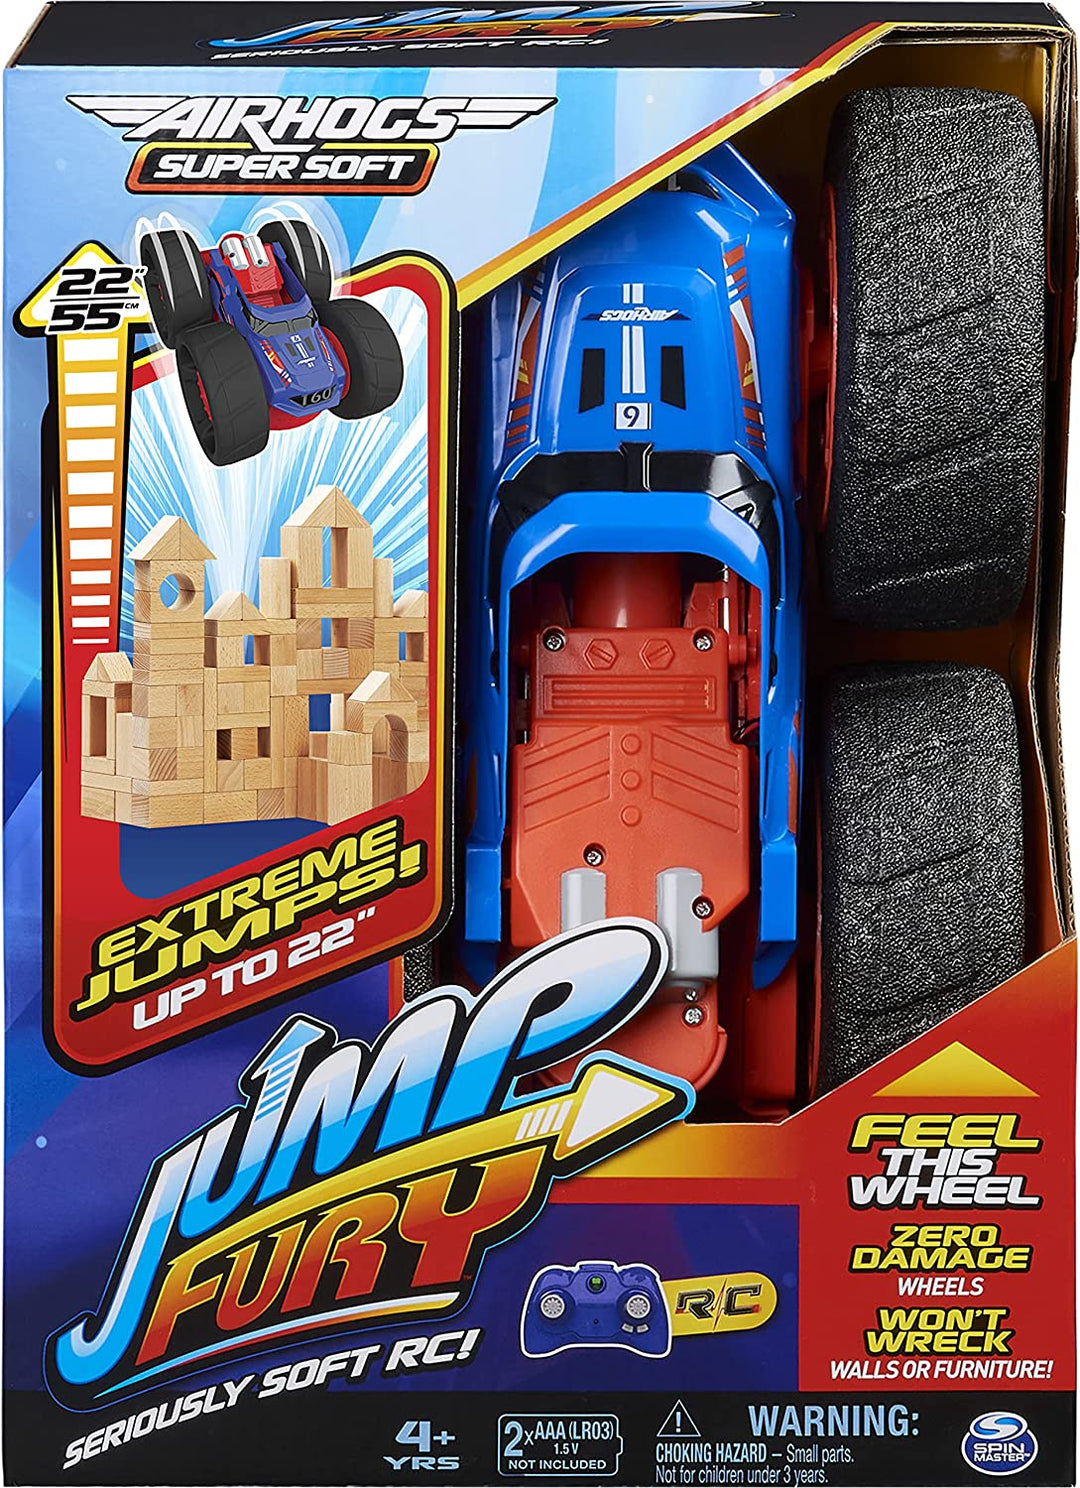 Air Hogs Super Soft, Jump Fury con ruedas de cero daños, Coche de control remoto de salto extremo, Juguetes para niños